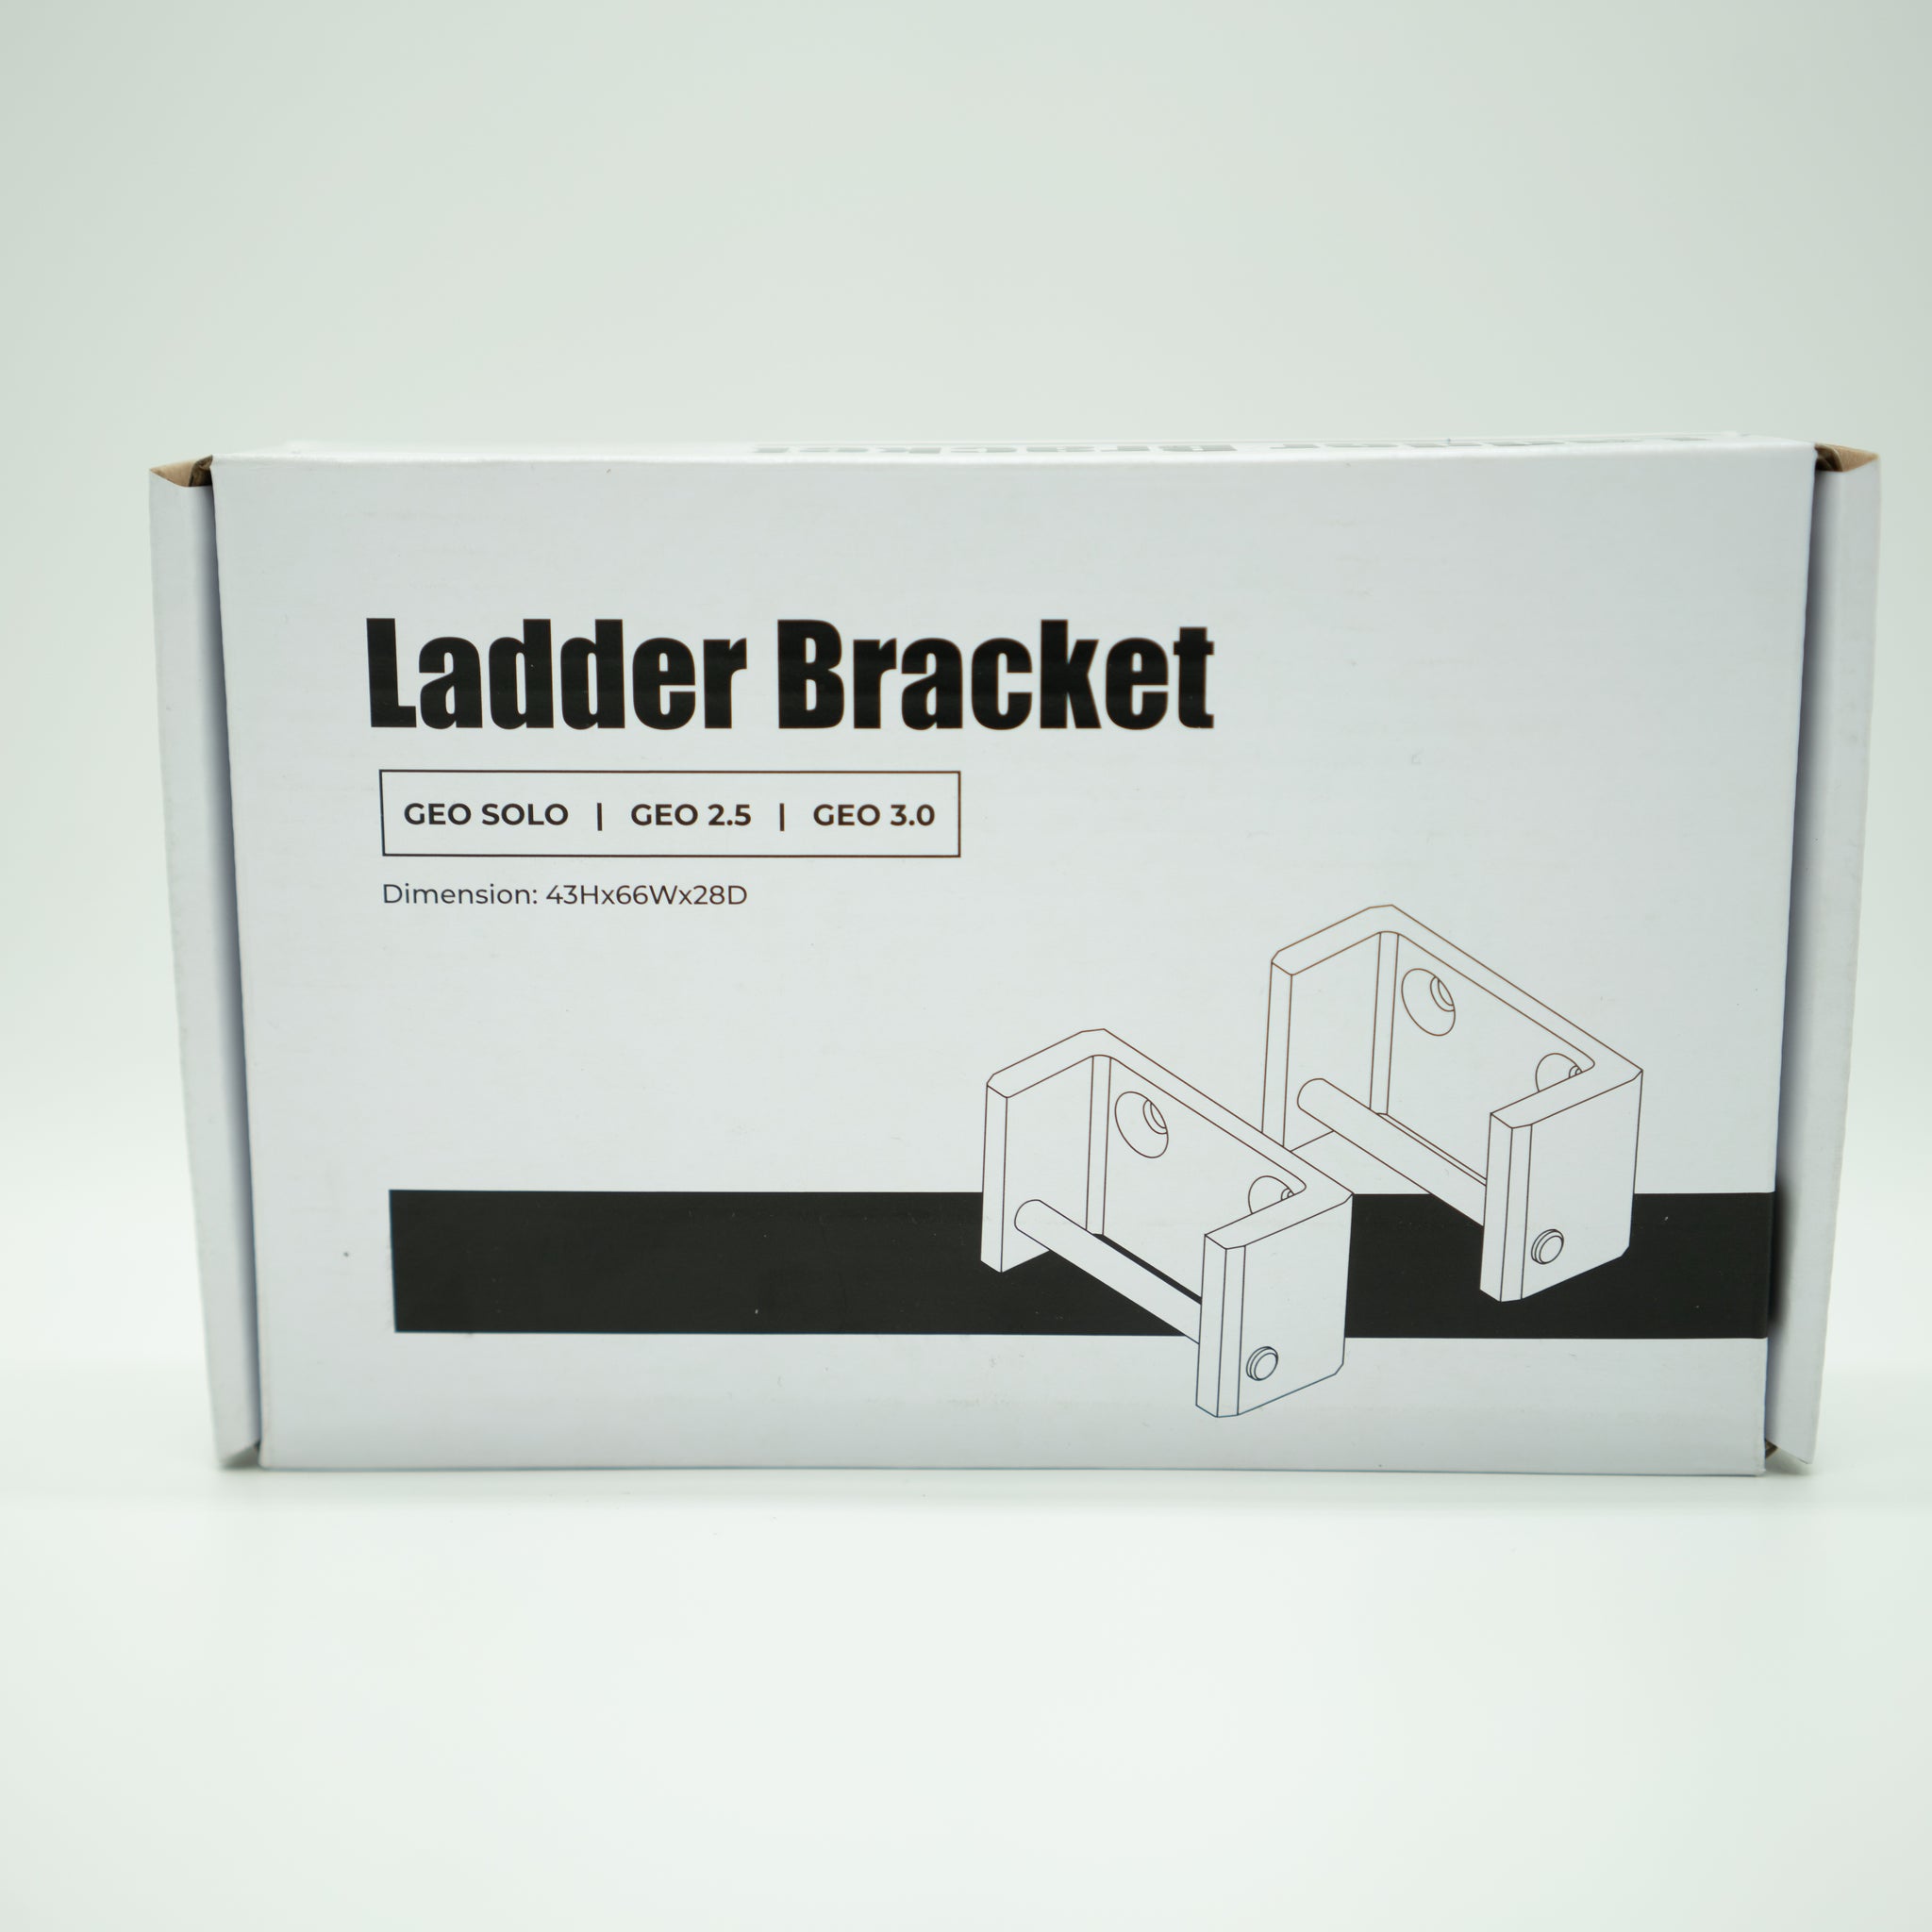 Ladder Brackets